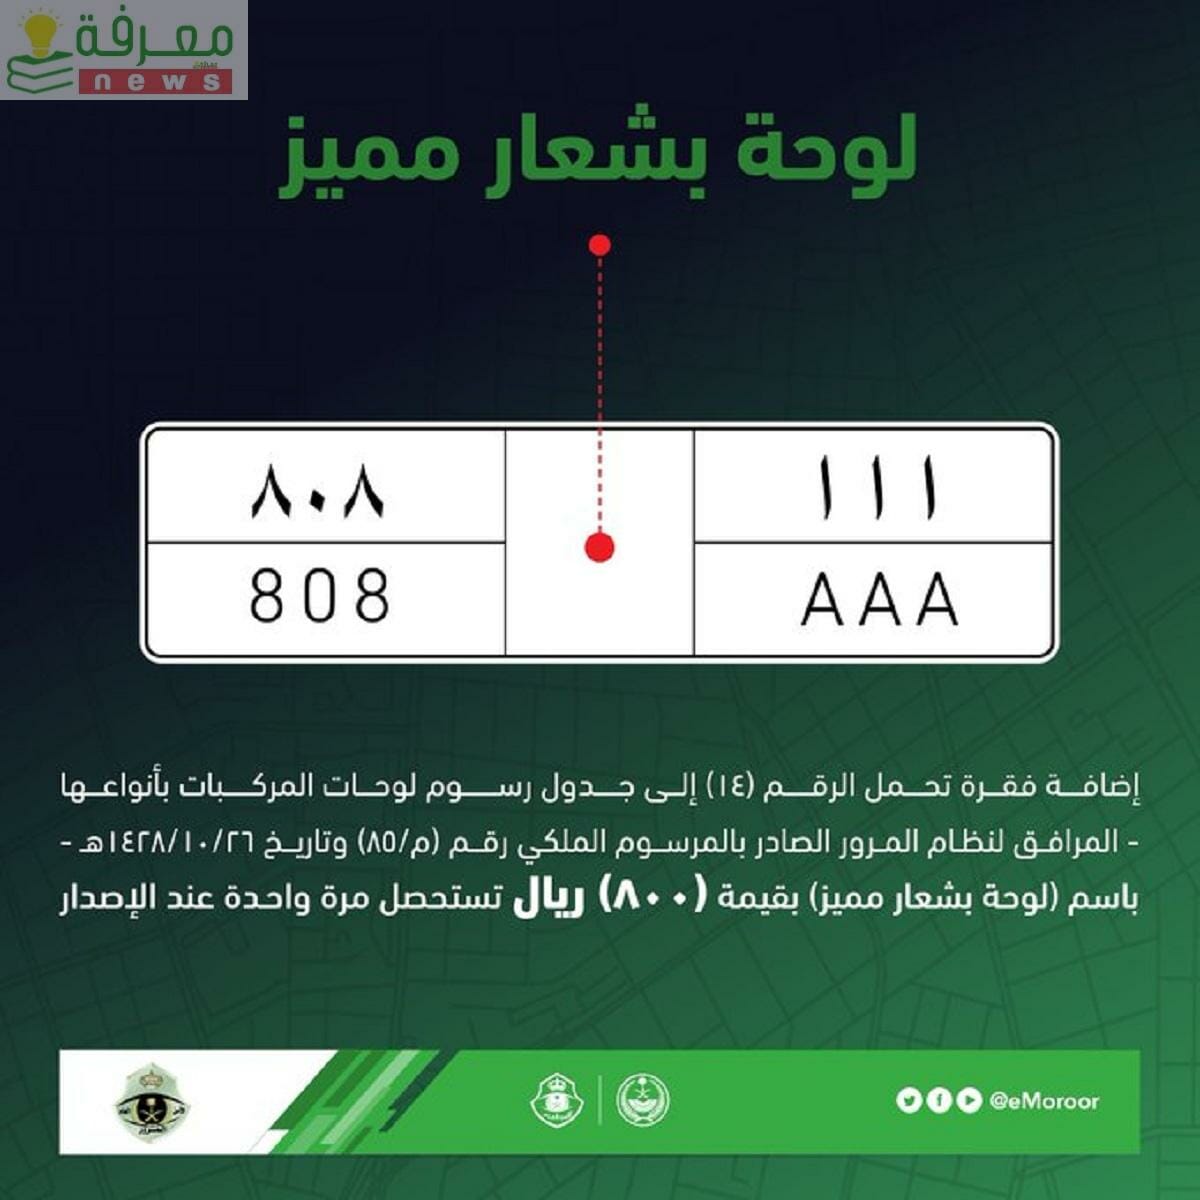 المرور السعودي يشرح كيفية البدء في عملية استبدال اللوحات بين مالكي السيارات